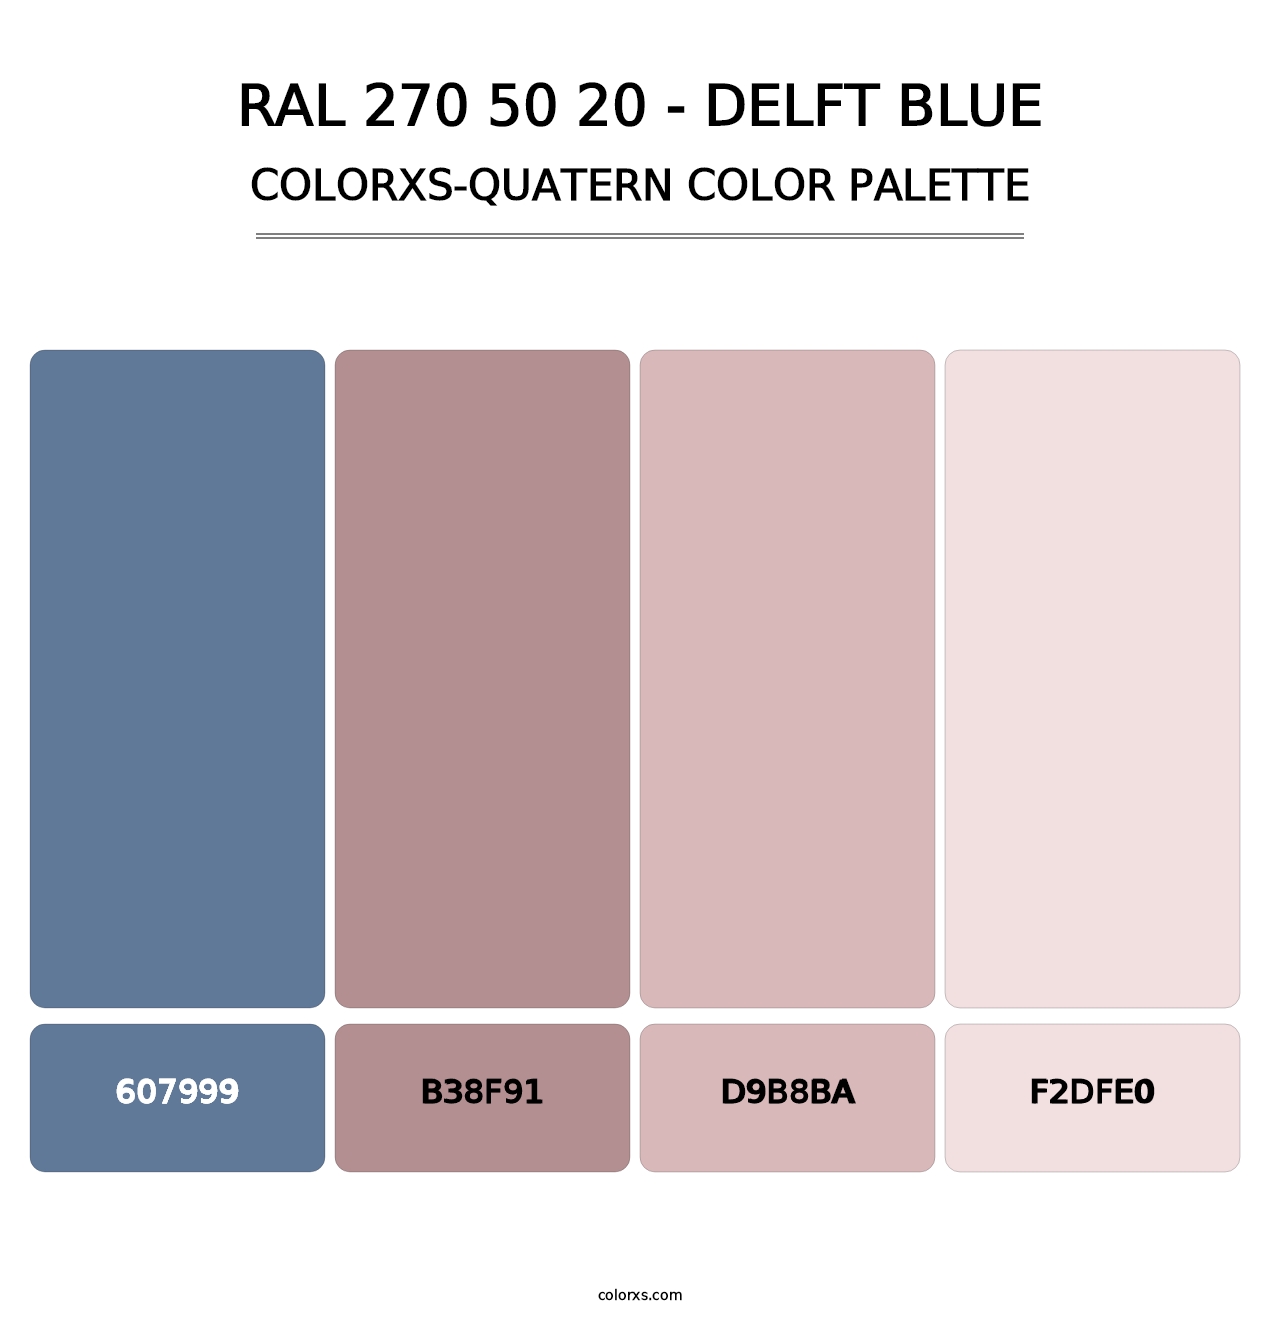 RAL 270 50 20 - Delft Blue - Colorxs Quatern Palette